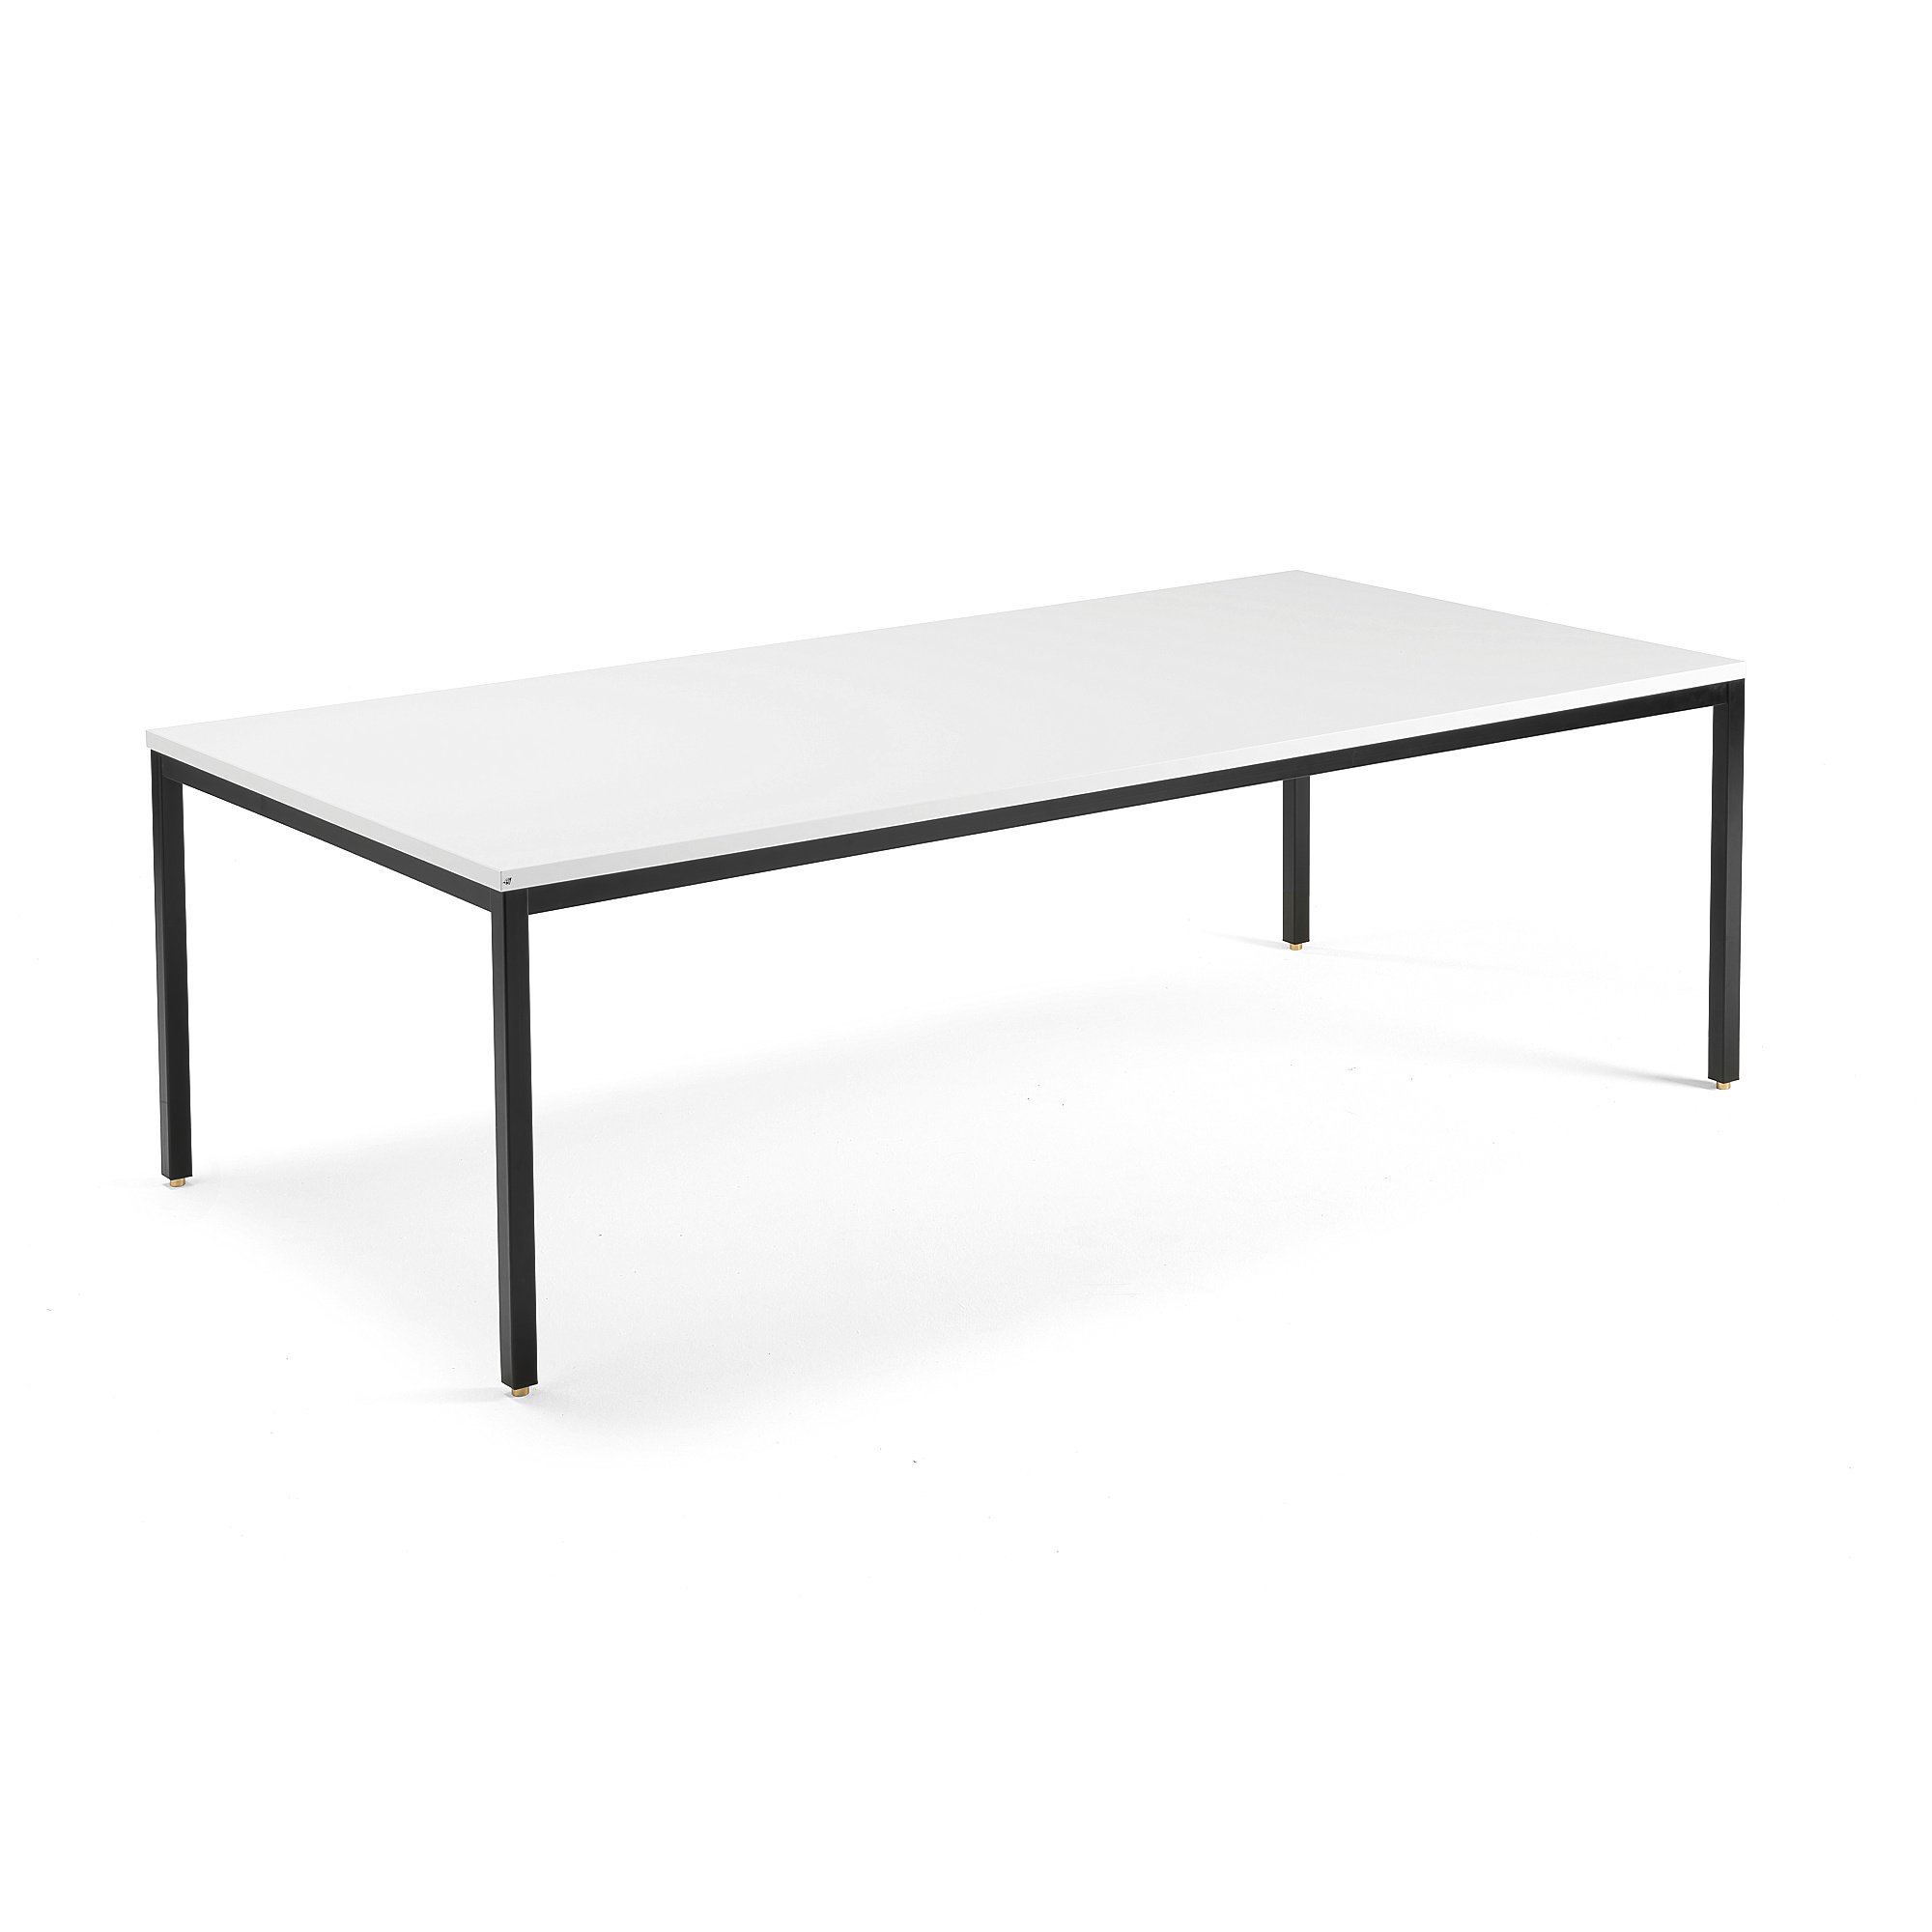 Jednací stůl QBUS, 2400x1200 mm, 4 nohy, černý rám, bílá